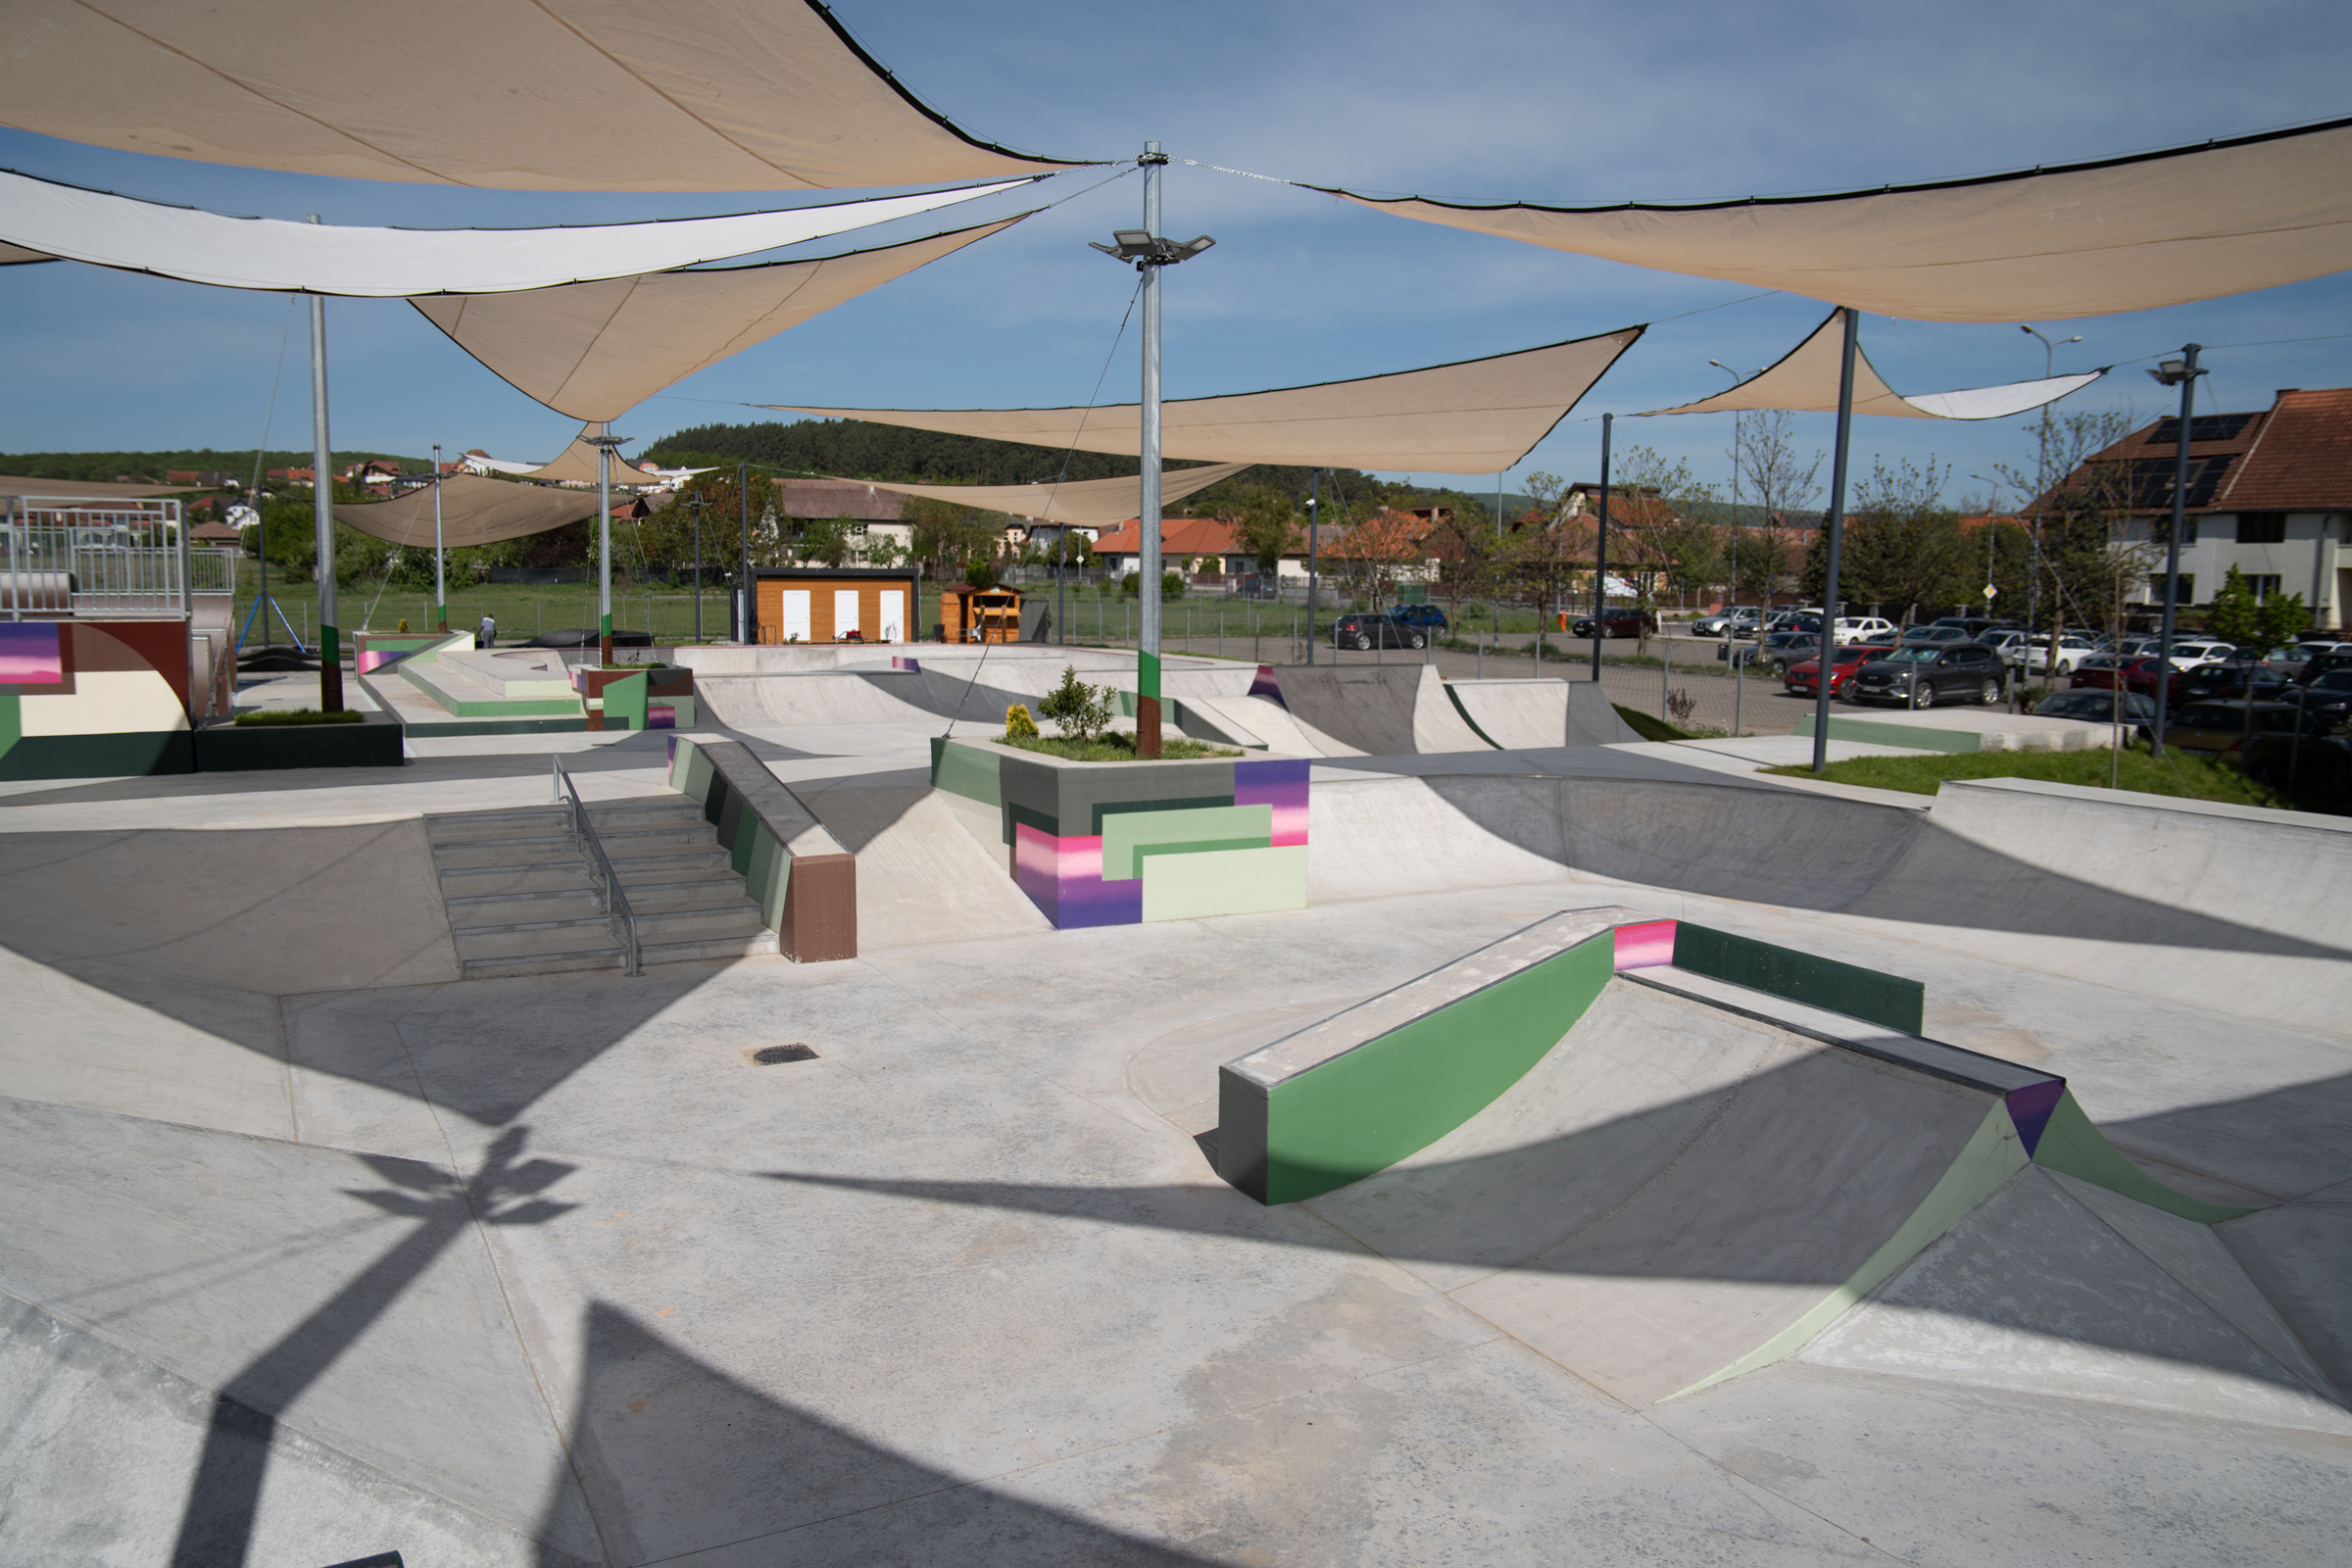 Május elsején nyílik Sepsiszentgyörgy új skateparkja